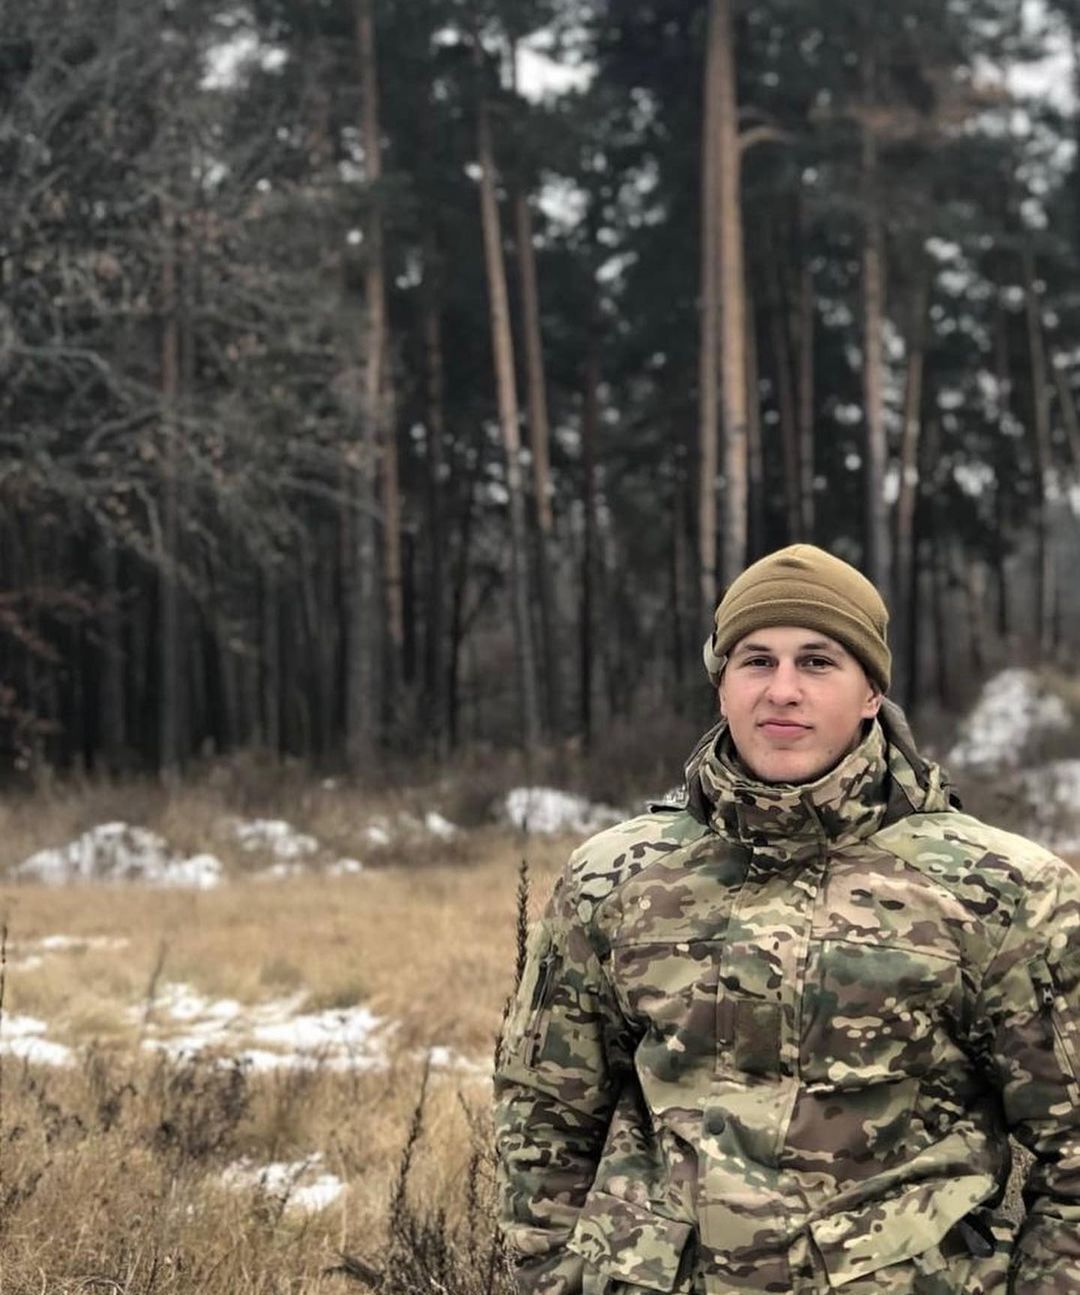 Похоронили через год: в ближнем бою под Донецком погиб чемпион Украины по плаванию, служивший в президентском полку